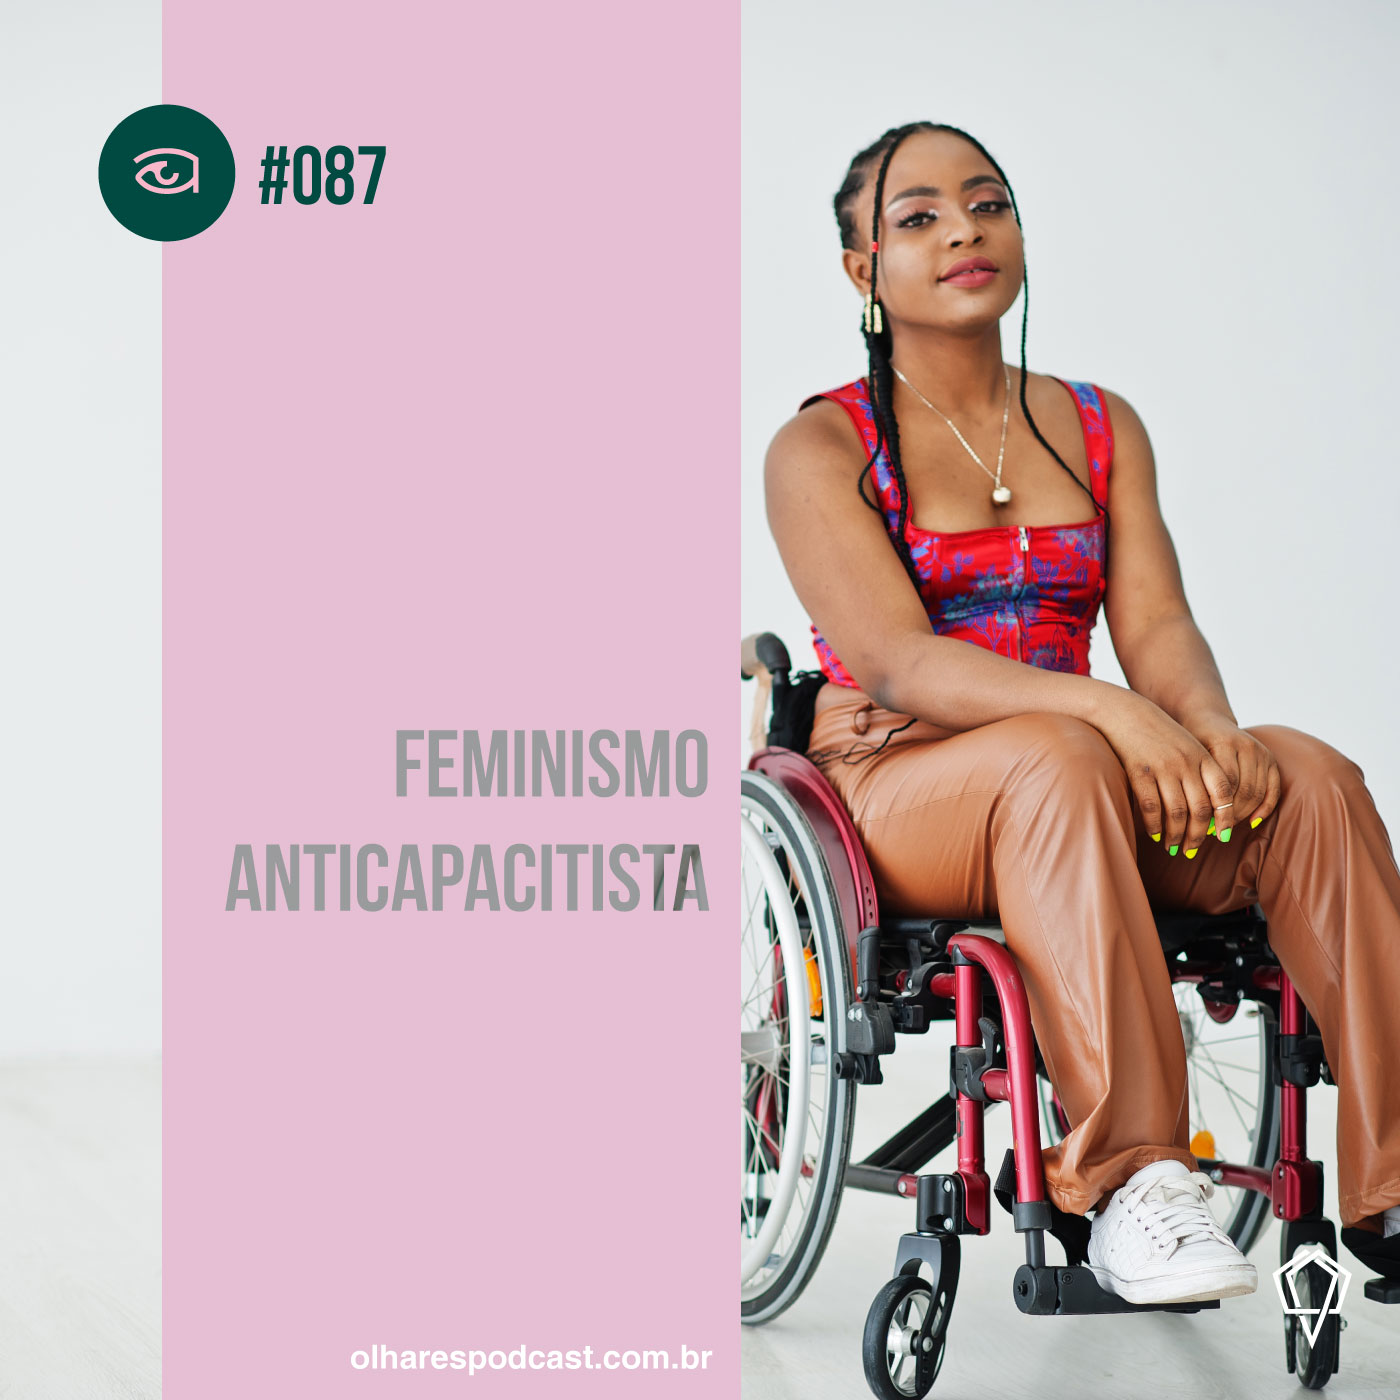 Olhares #087 Feminismo anticapacitista